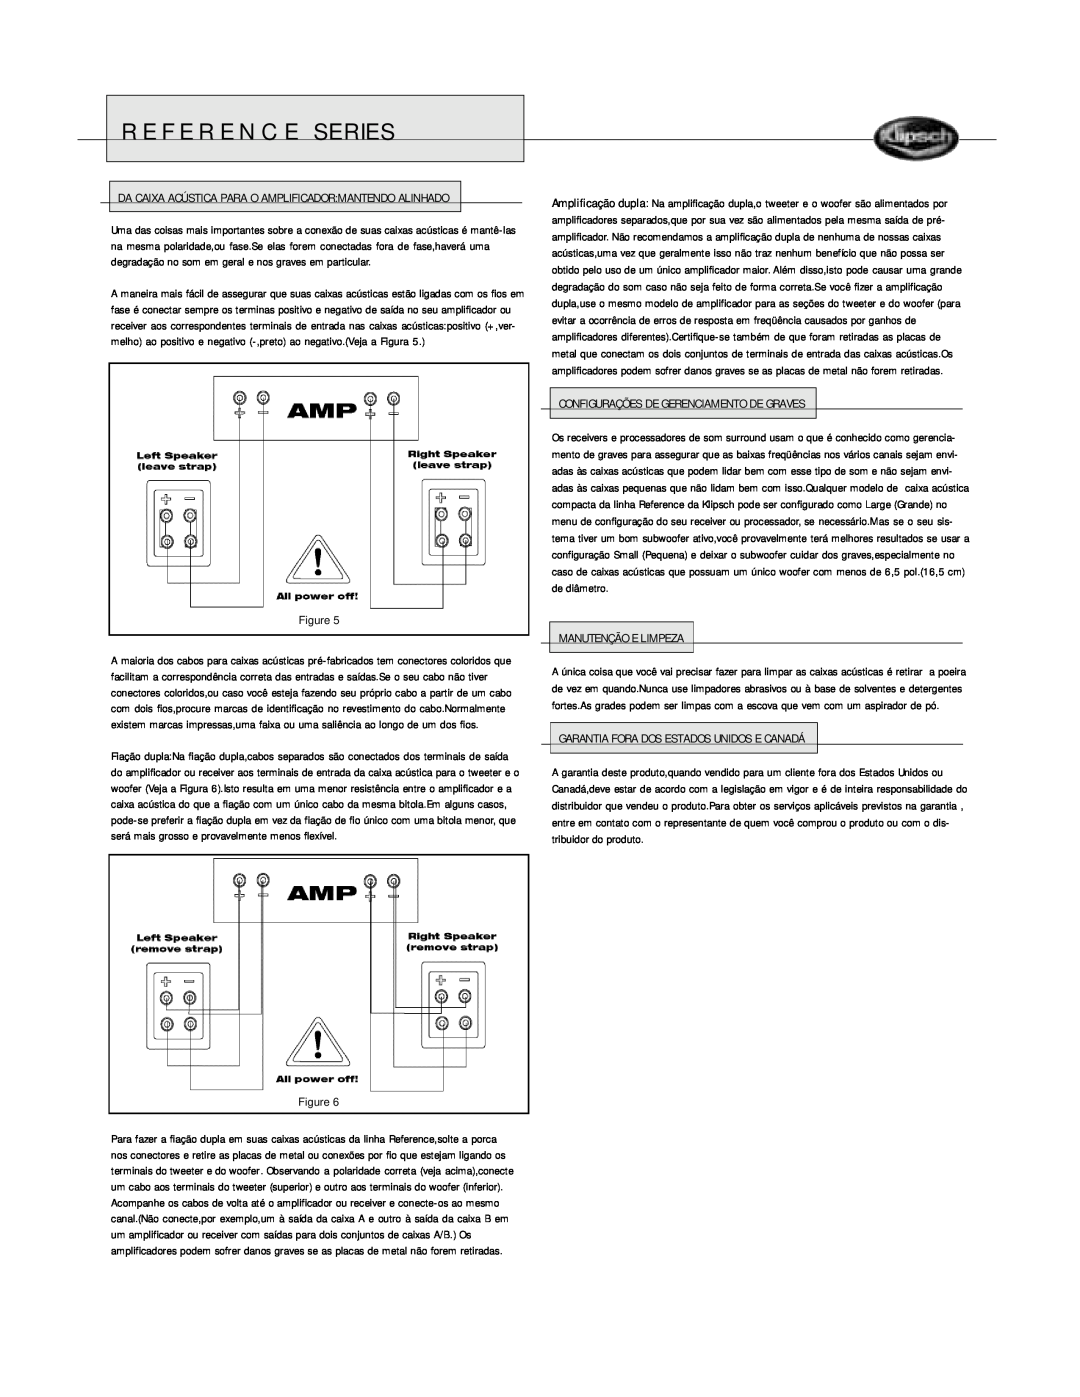 Klipsch Bookshelf Speaker owner manual Reference Series, Configurações De Gerenciamento De Graves, Manutenção E Limpeza 